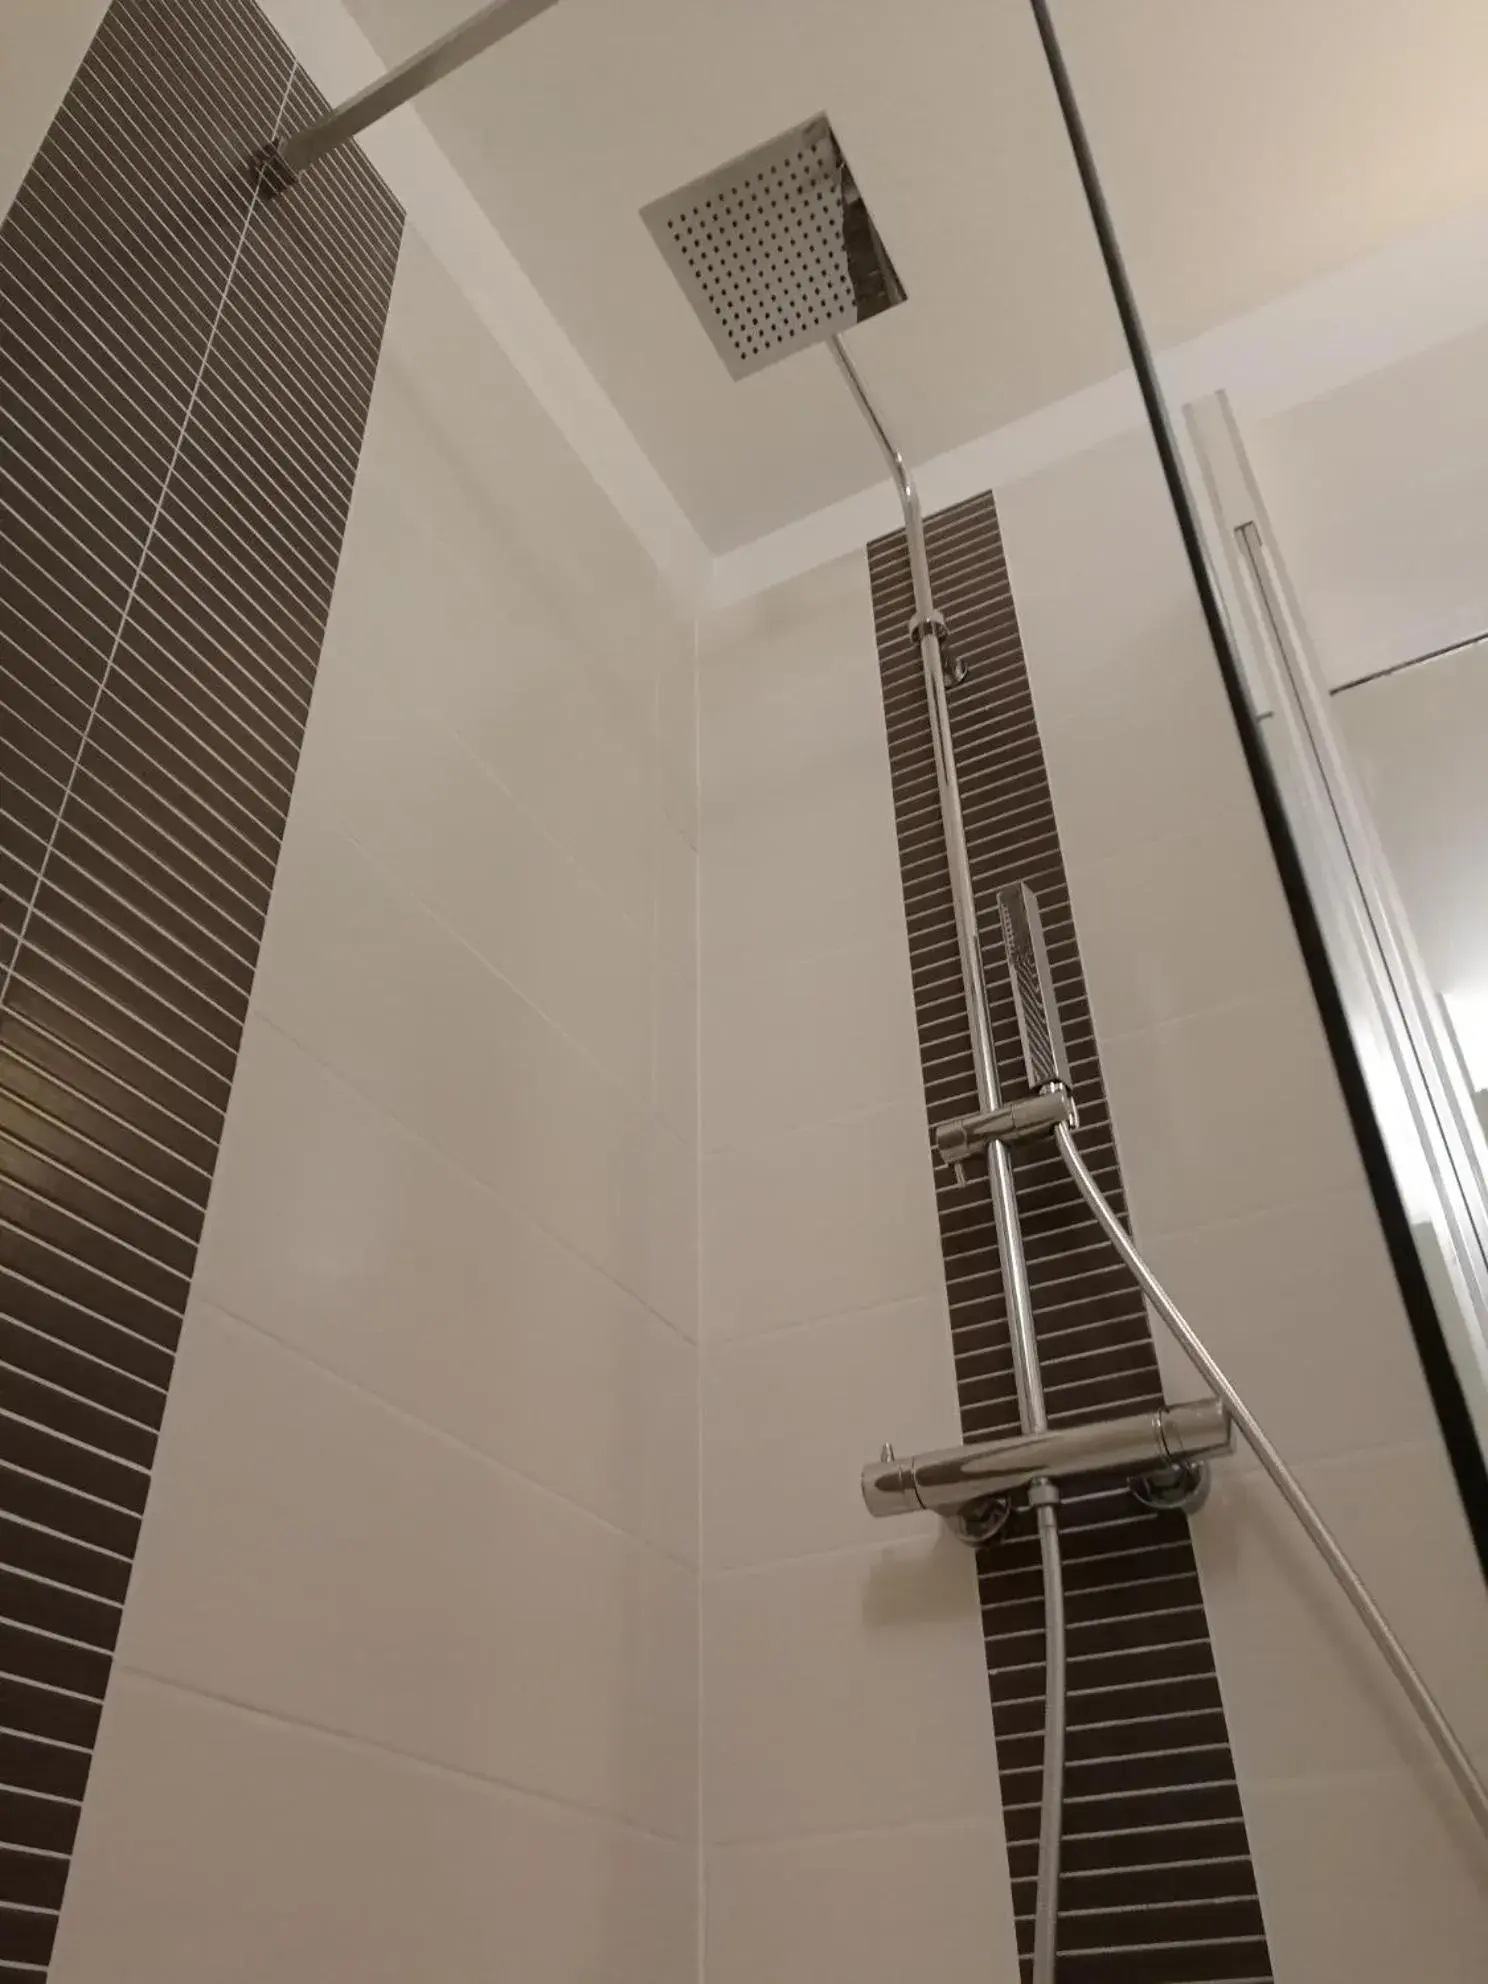 Shower, Bathroom in Hôtel des Etats-Unis